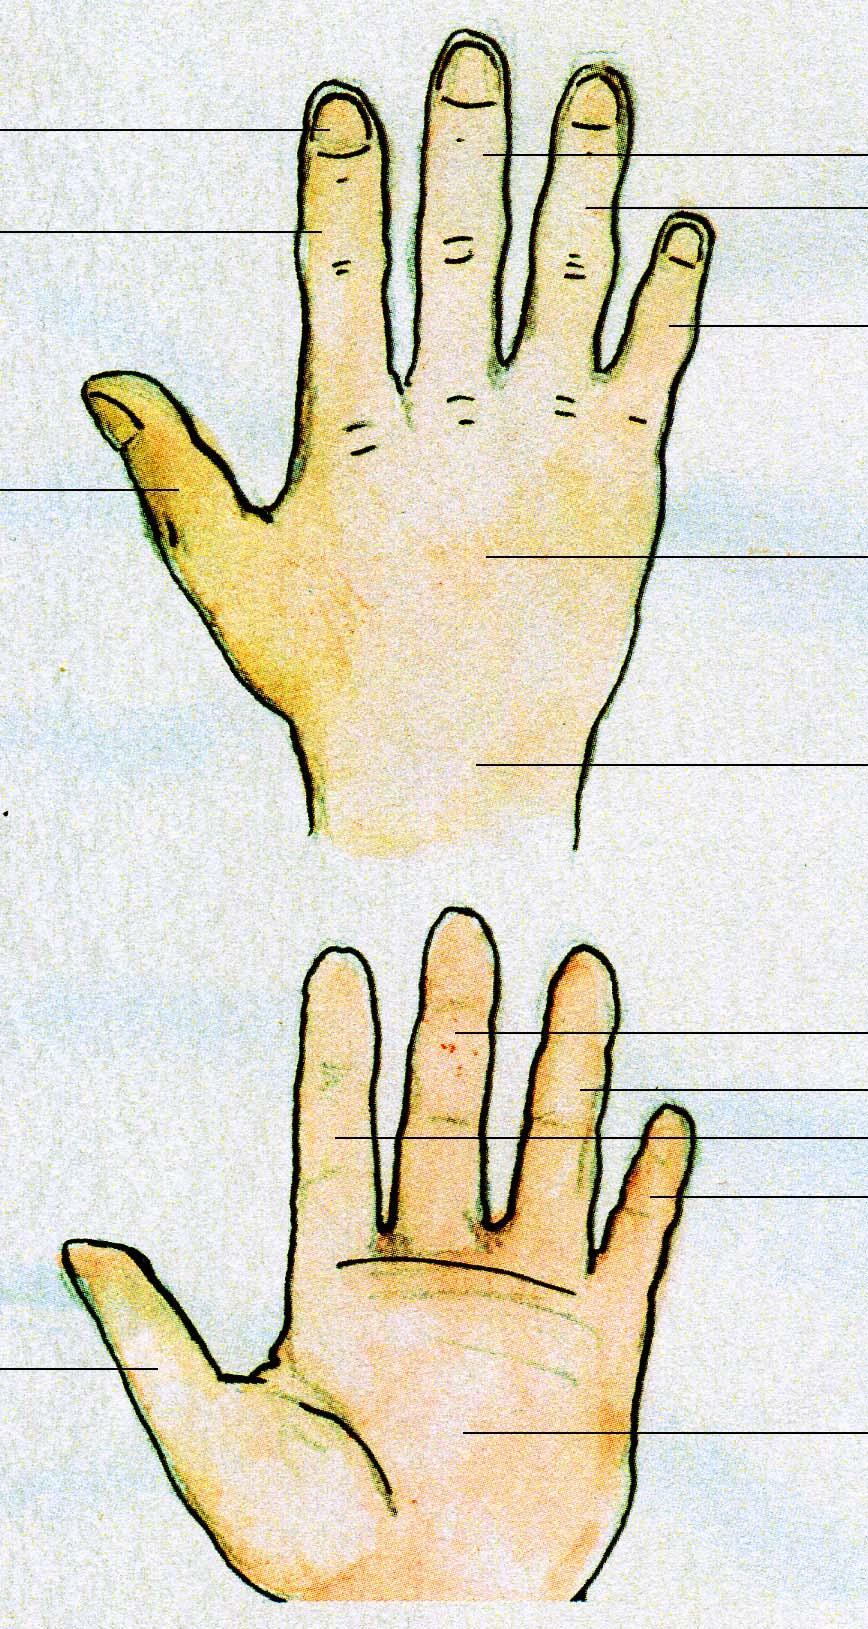 paznokieć Wskaziciel/palec wskazujący Środkowy palec Serdeczny palec Mały palec kciuk